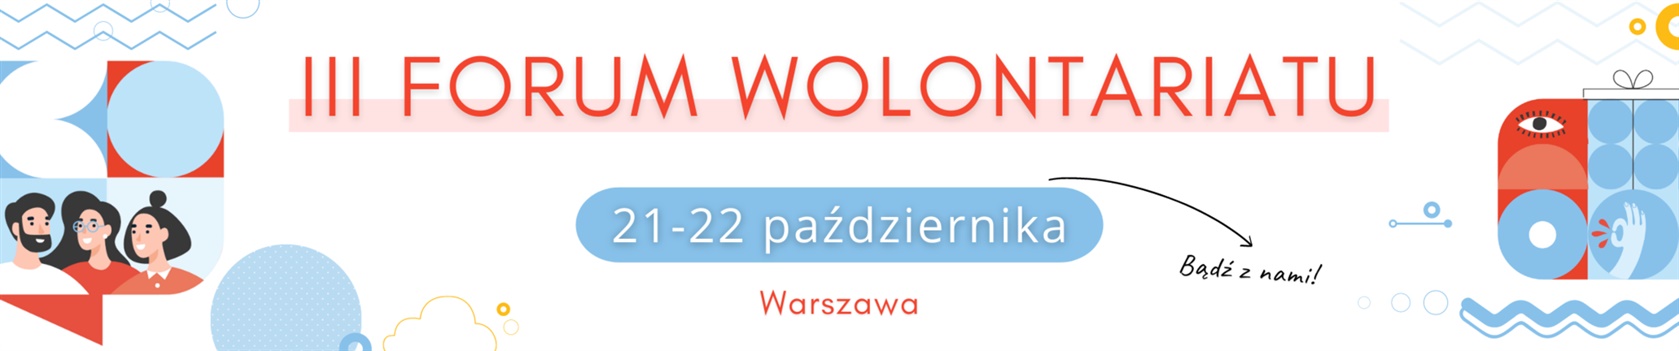 iii-forum-wolontariatu-badz-z-nami-rejestracja-ruszyla-68.jpg